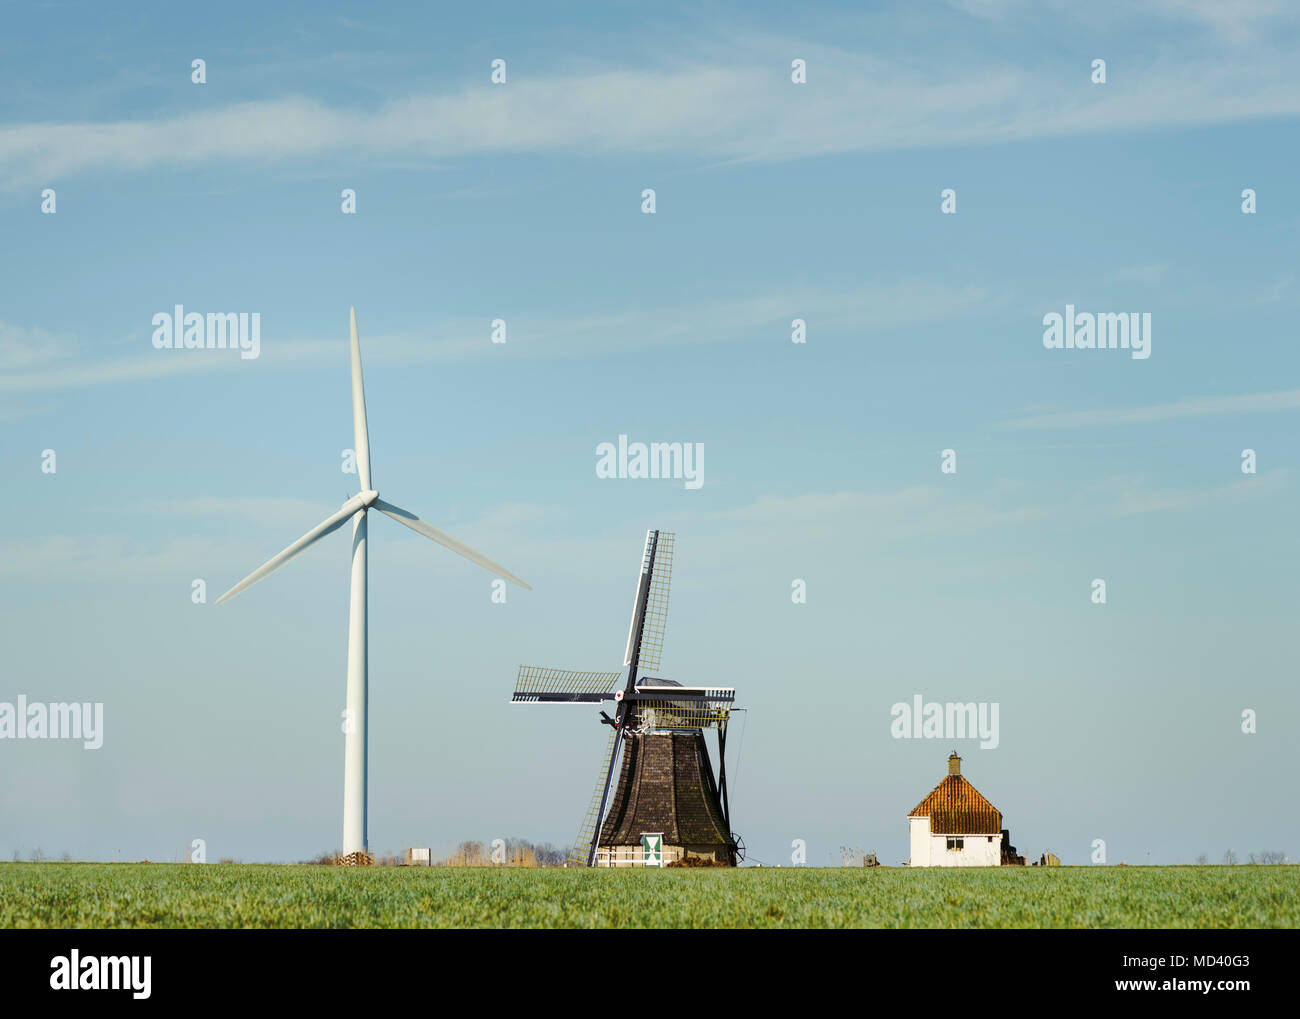 Turbina eólica moderna y tradicional molino holandés permanecer juntos, 4 estrellas, Frisia, Países Bajos Foto de stock